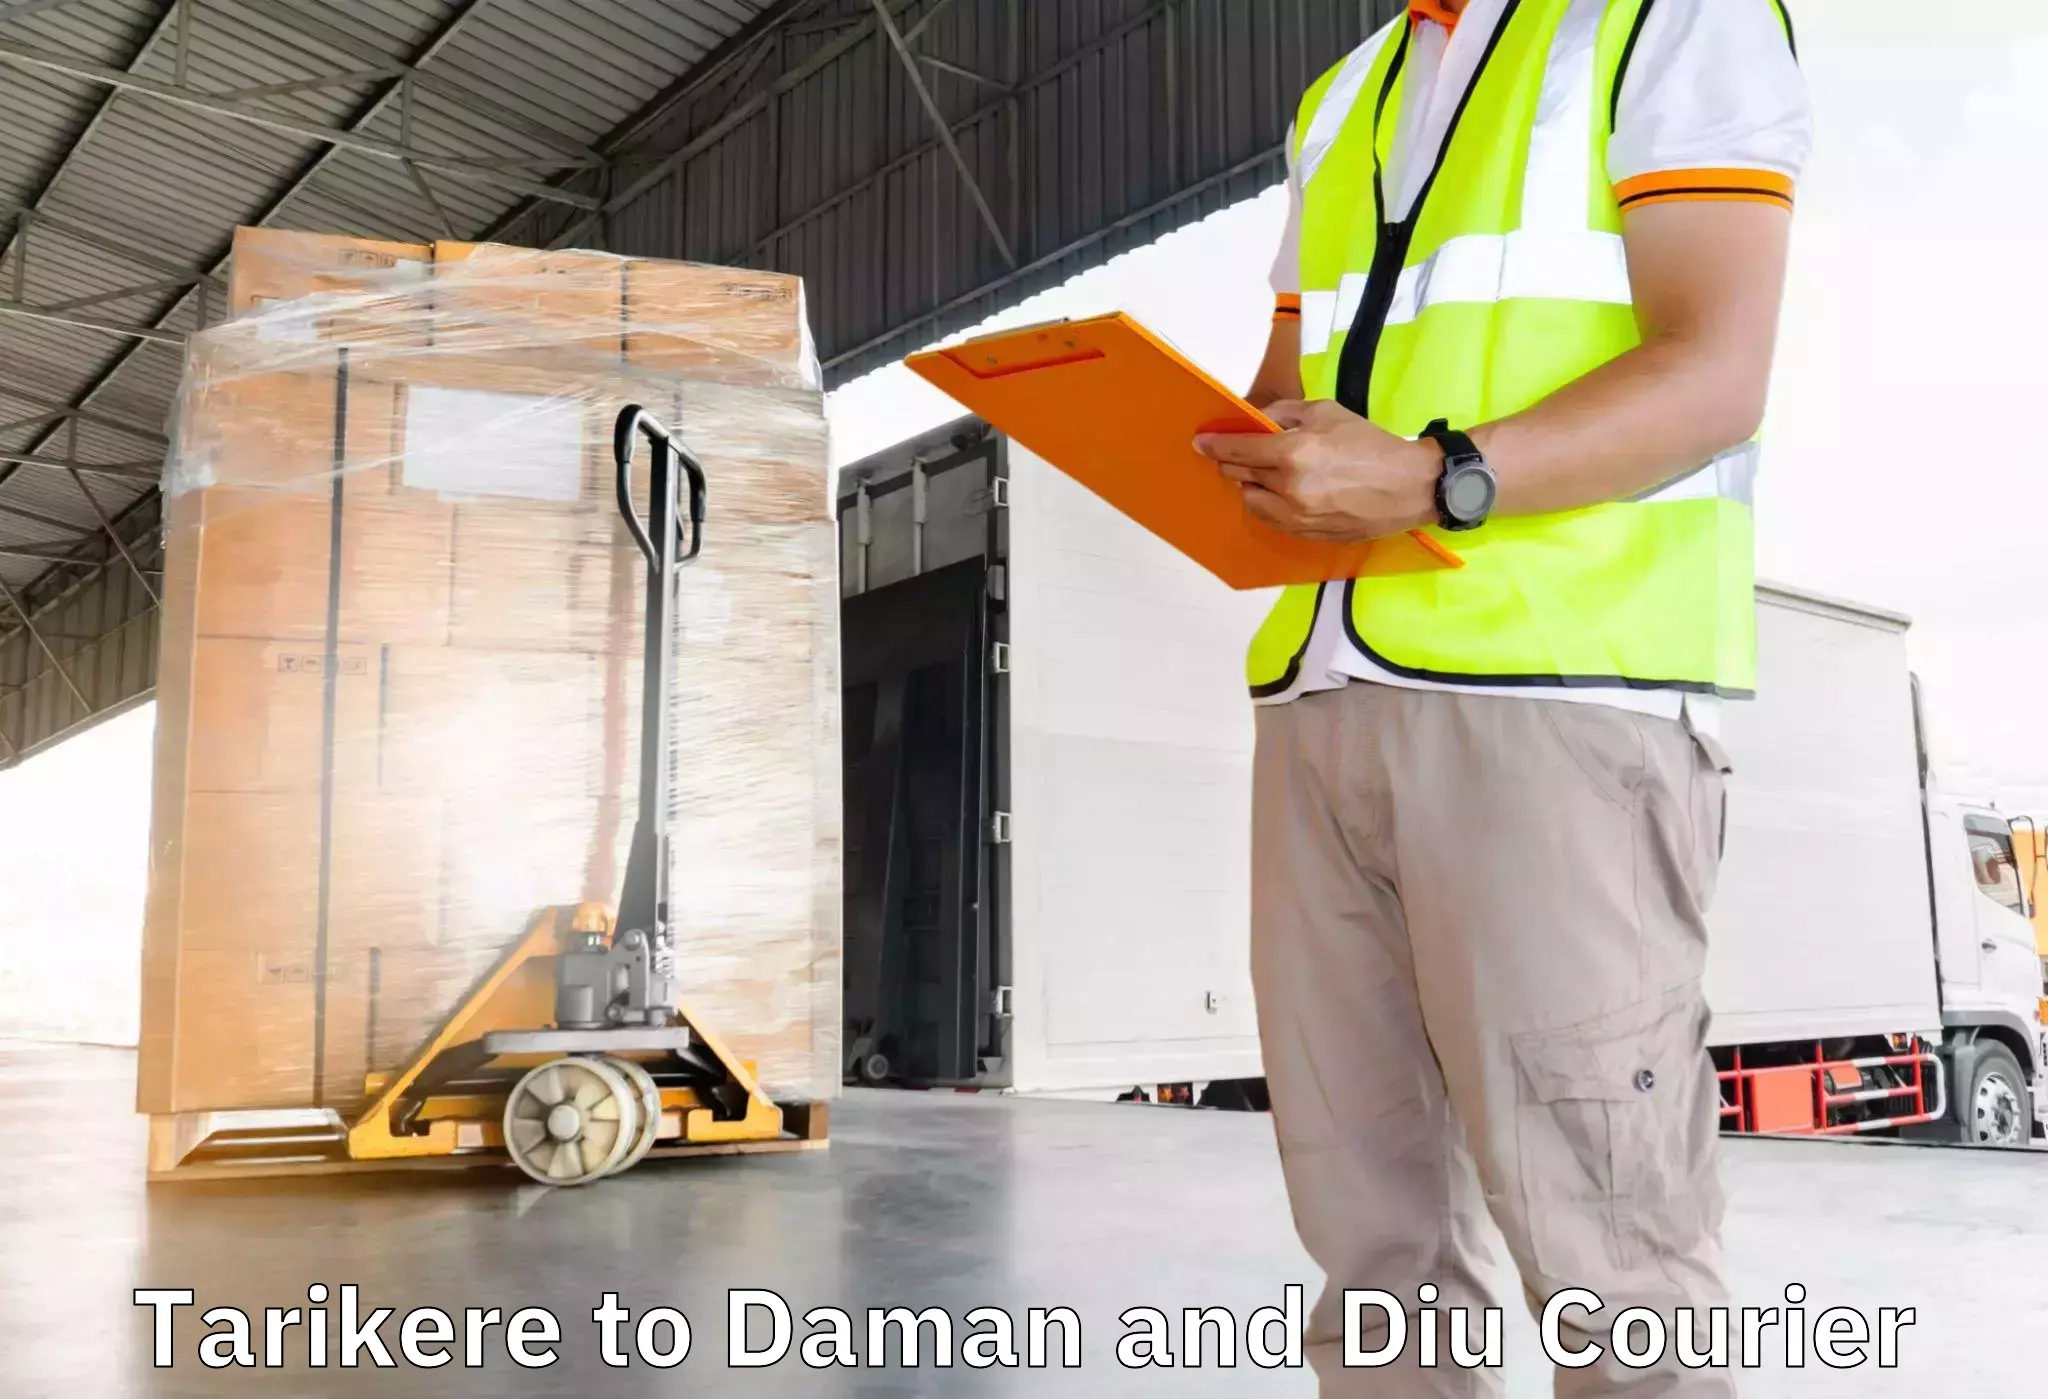 Furniture transport service Tarikere to Daman